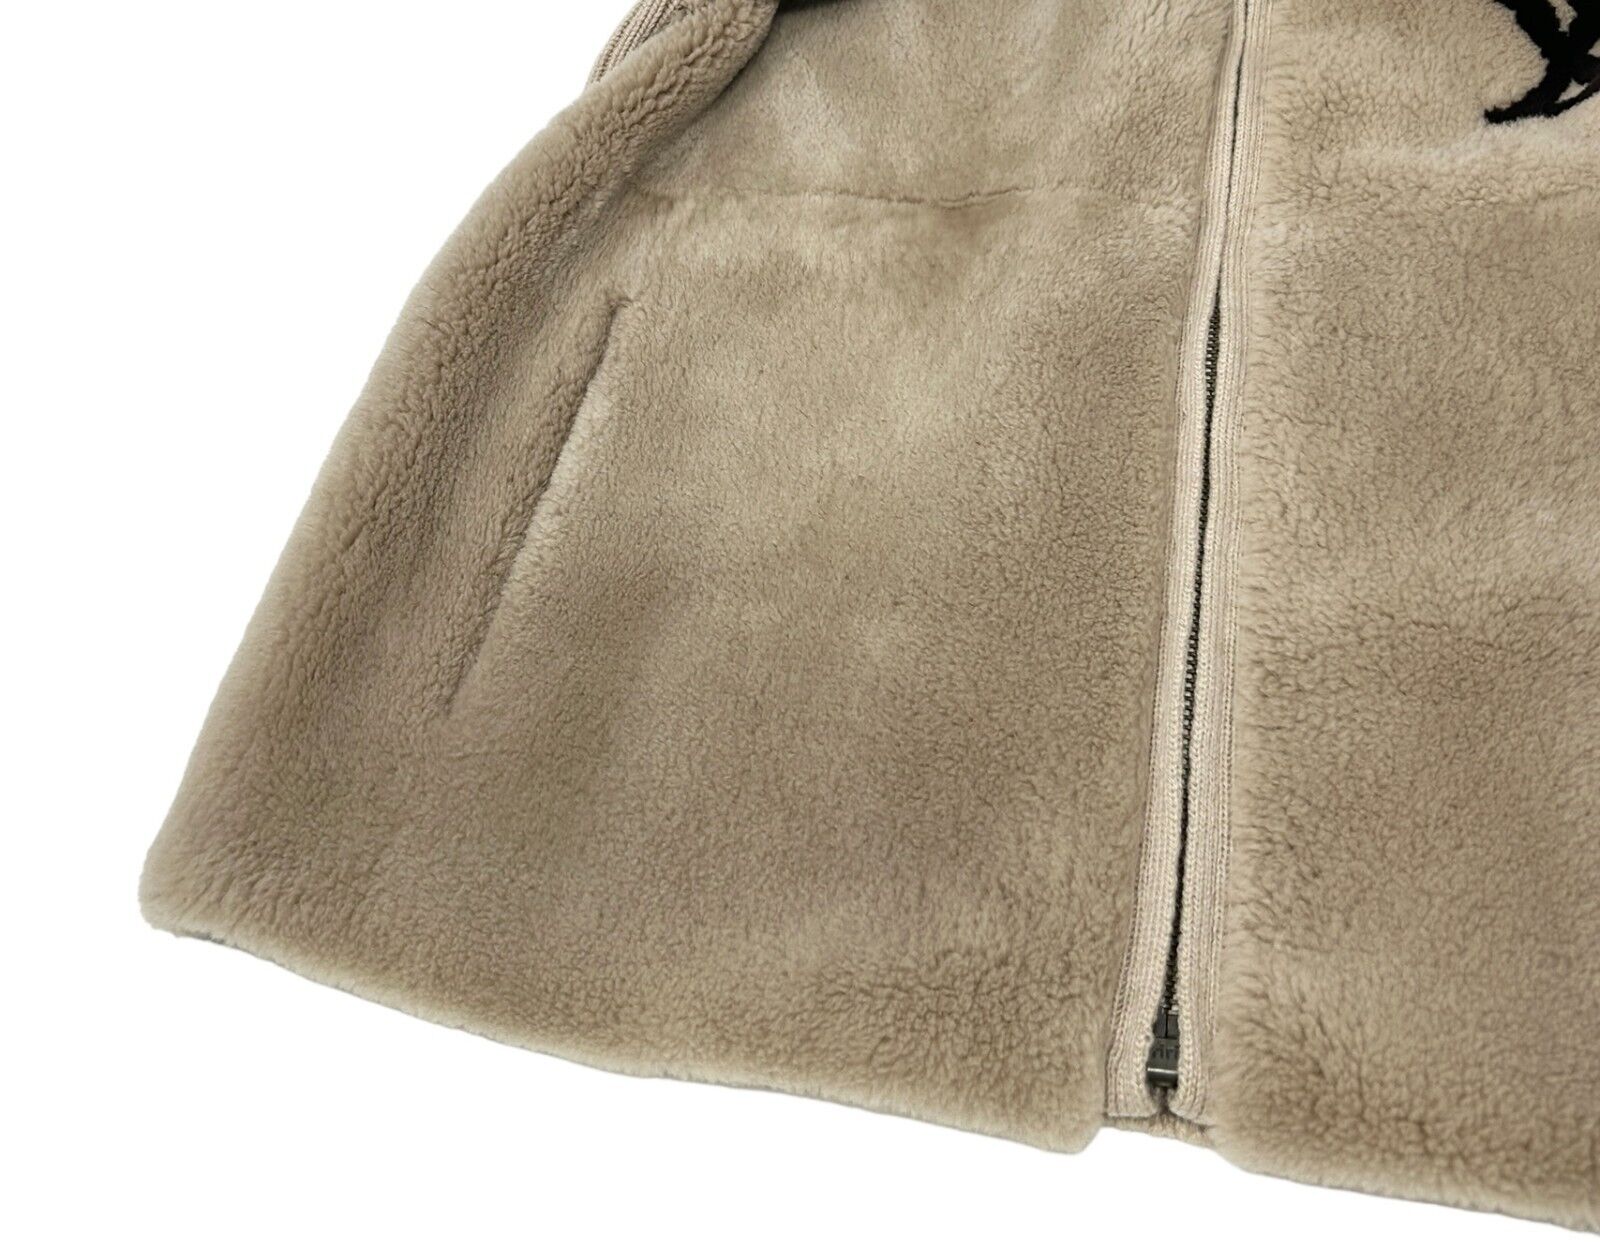 LOUIS VUITTON Vintage LV Logo Knit Jacket #L Light Brown Fur Wool Zip RankAB